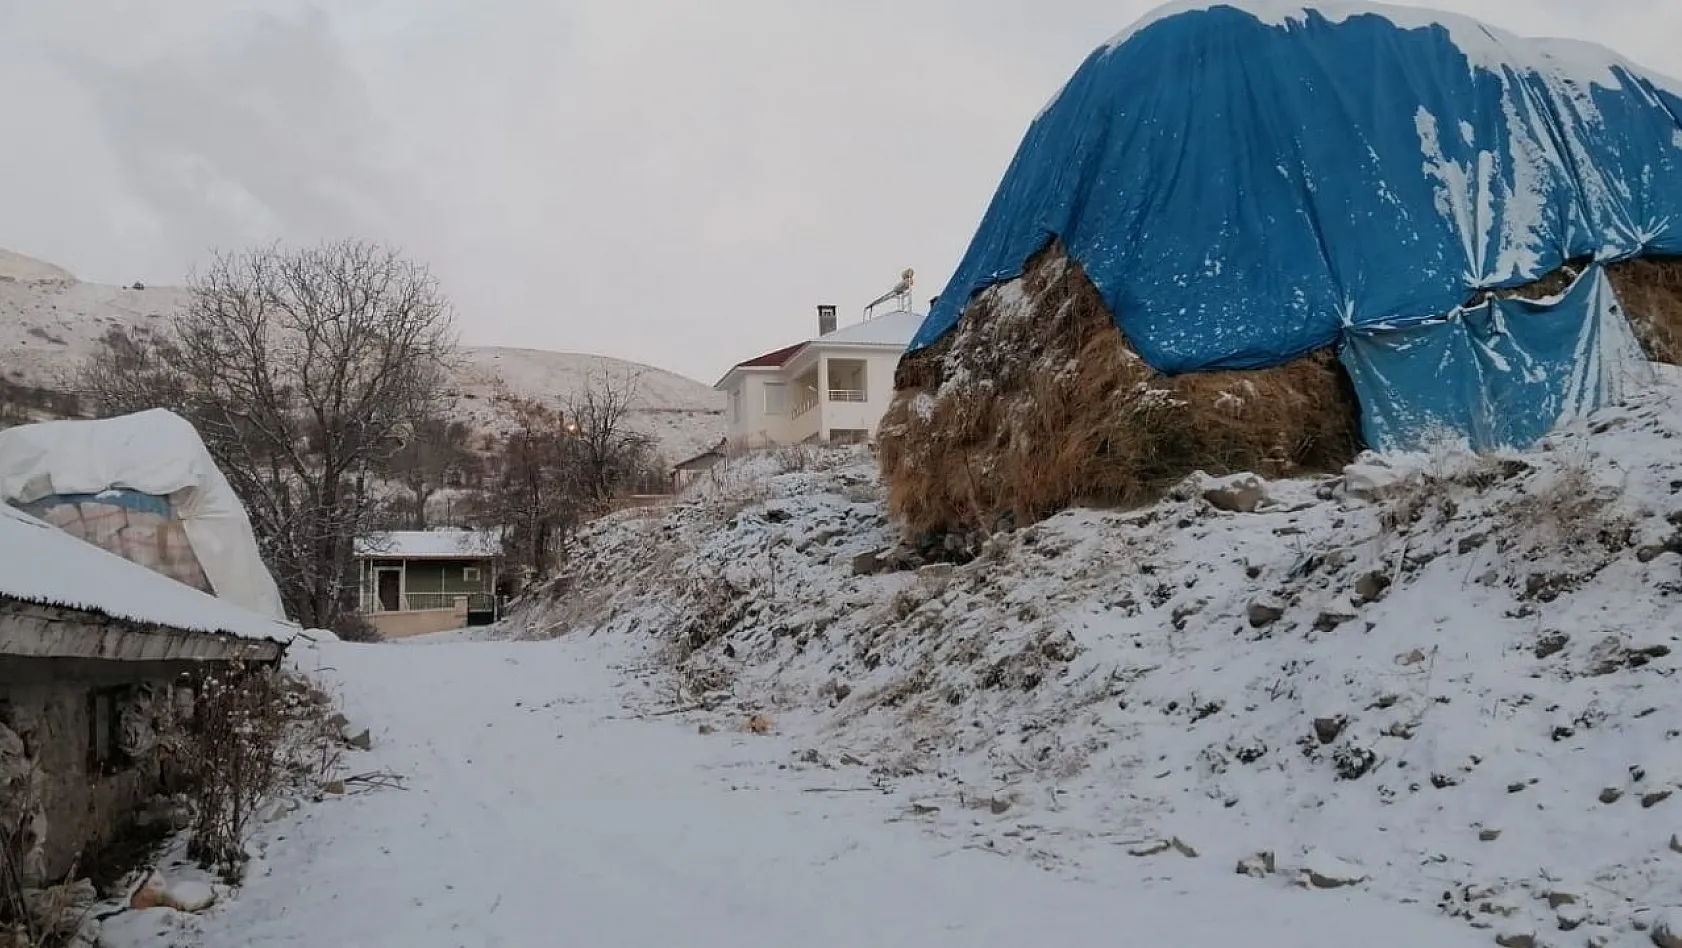 Tunceli'de kar sevinci kısa sürdü